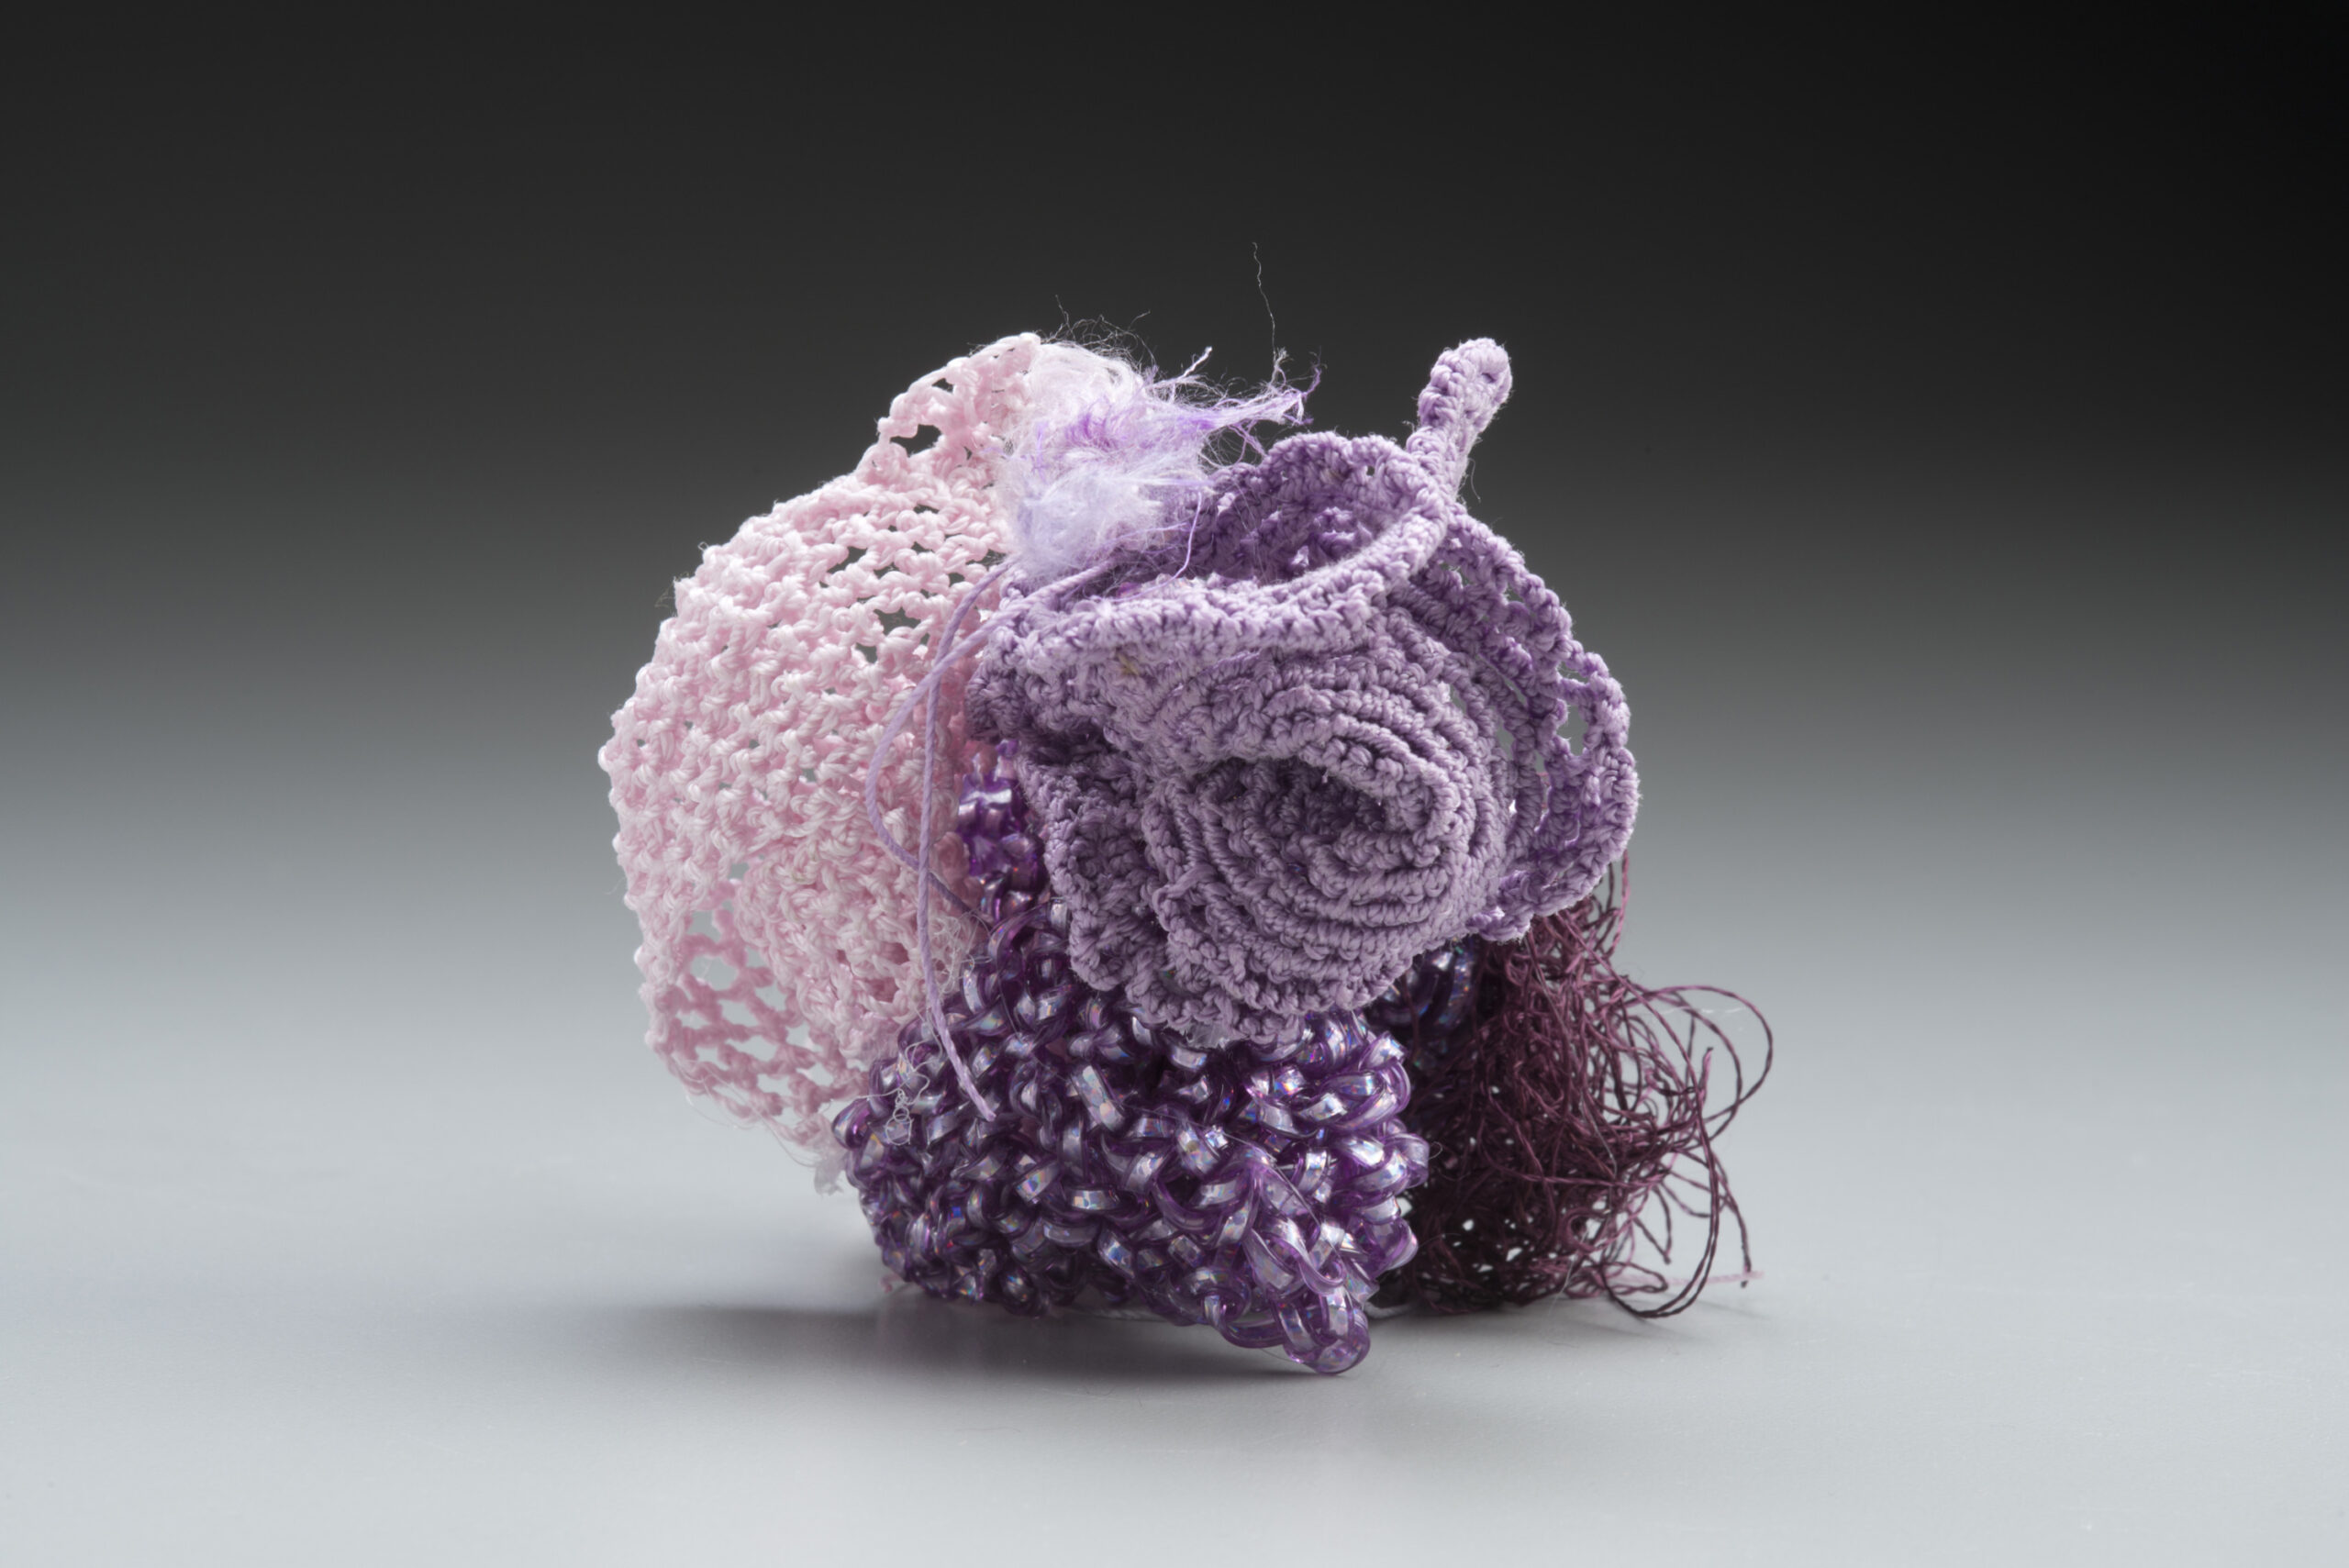 Biomorphic Object: Pocillopora Coral